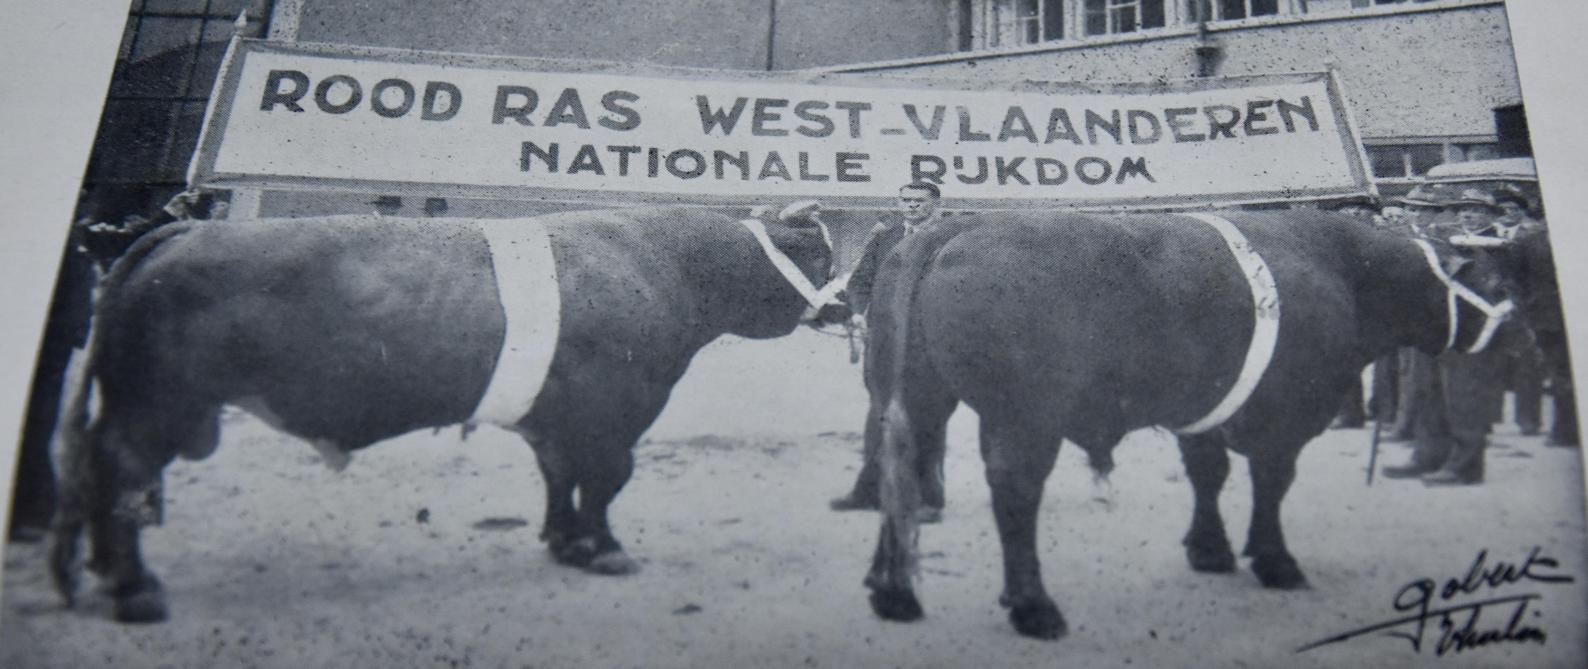 West-Vlaanderen is trots op het rode ras.